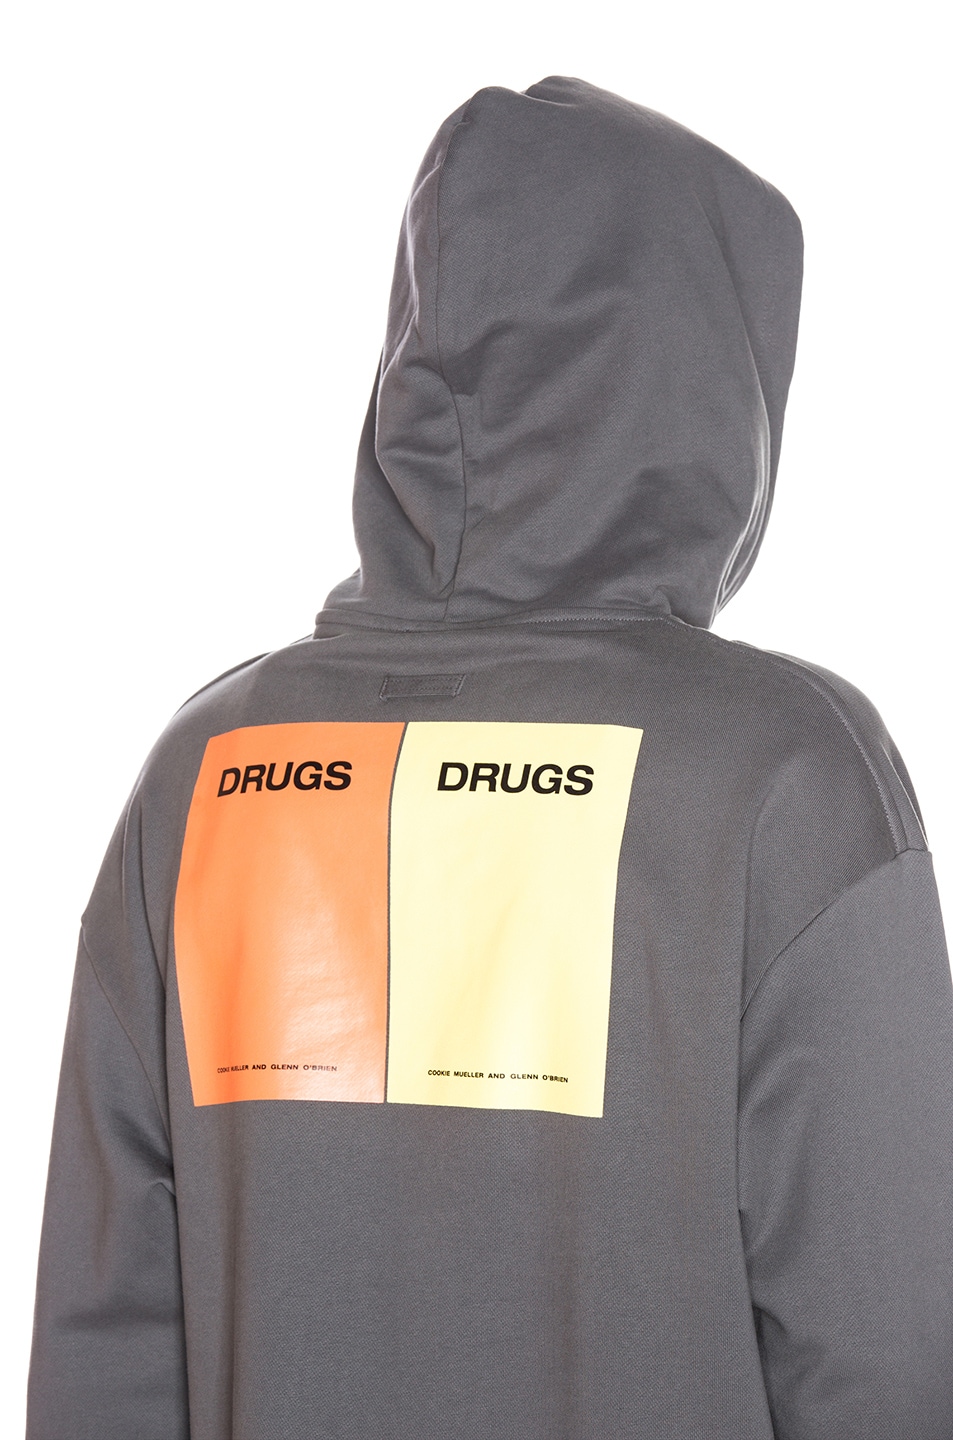 raf simons drugs sweatshirt